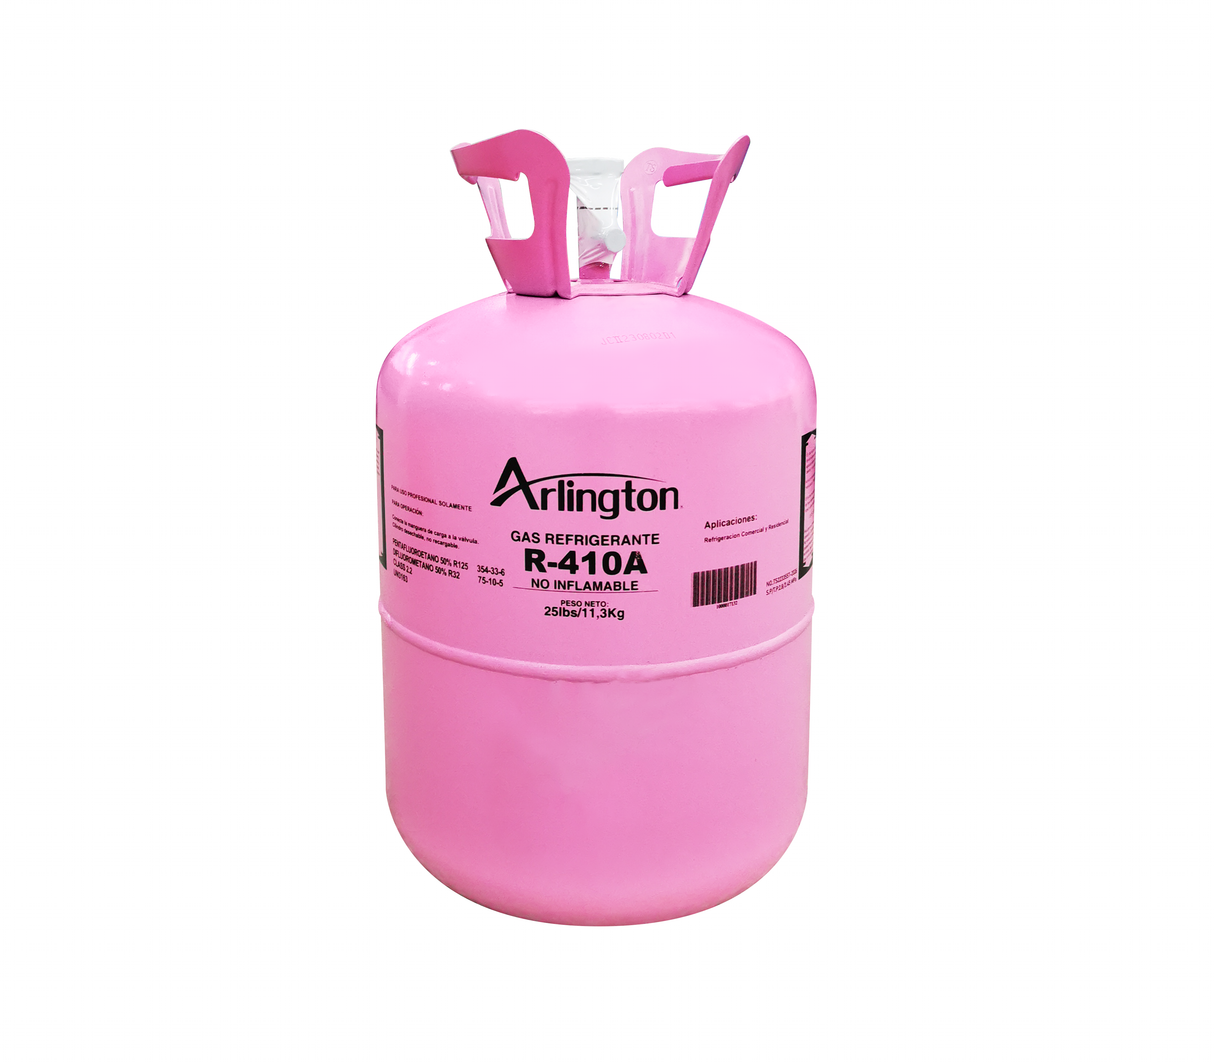 Gas refrigerante R-410A 11.30kg Arlington